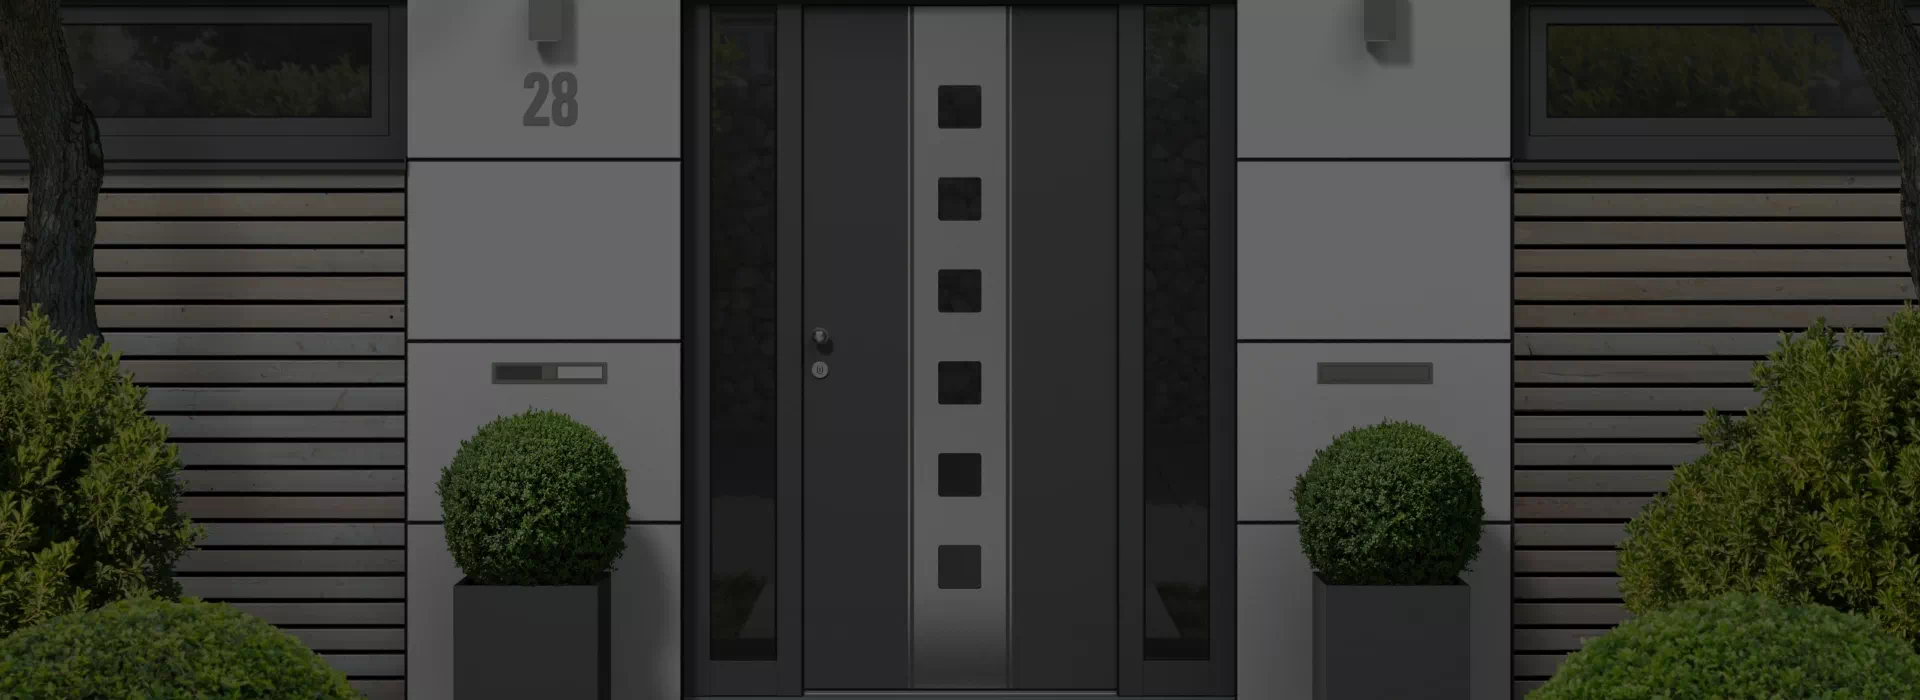 drzwi wejściowe do budynku